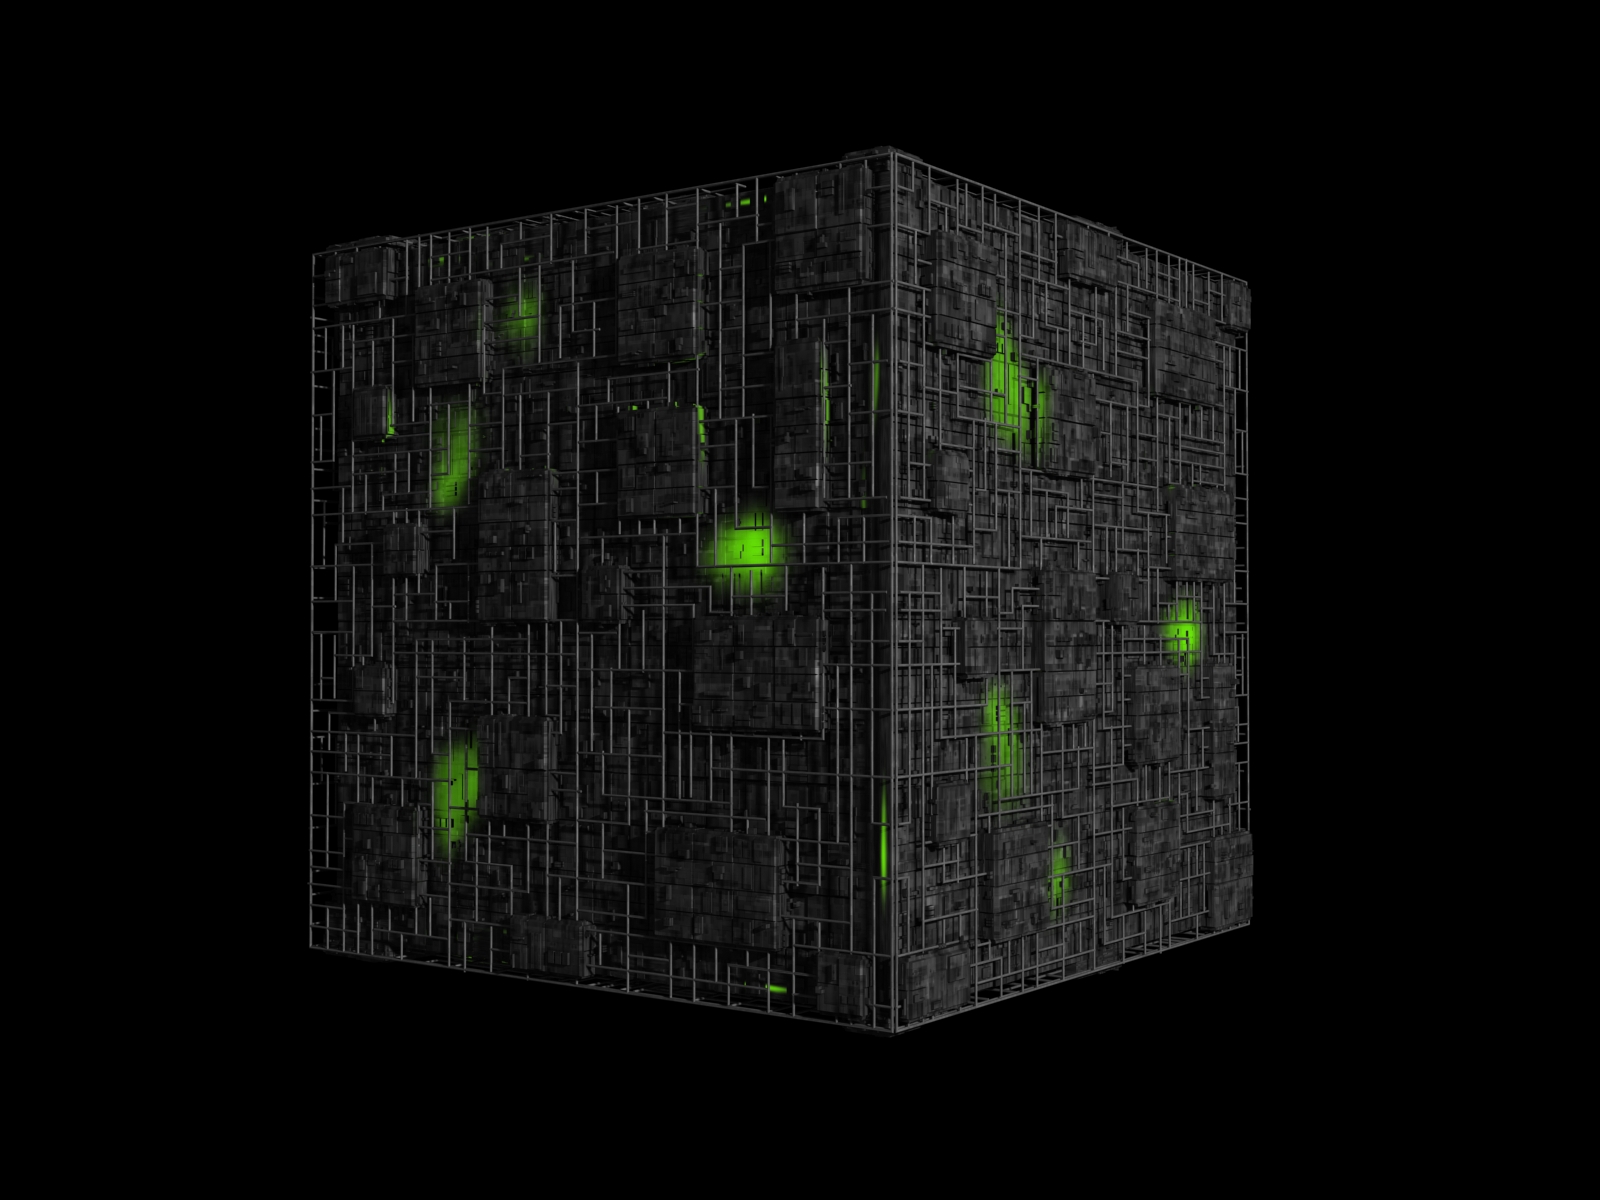 Borg Cube By Metlesitsfleetyards